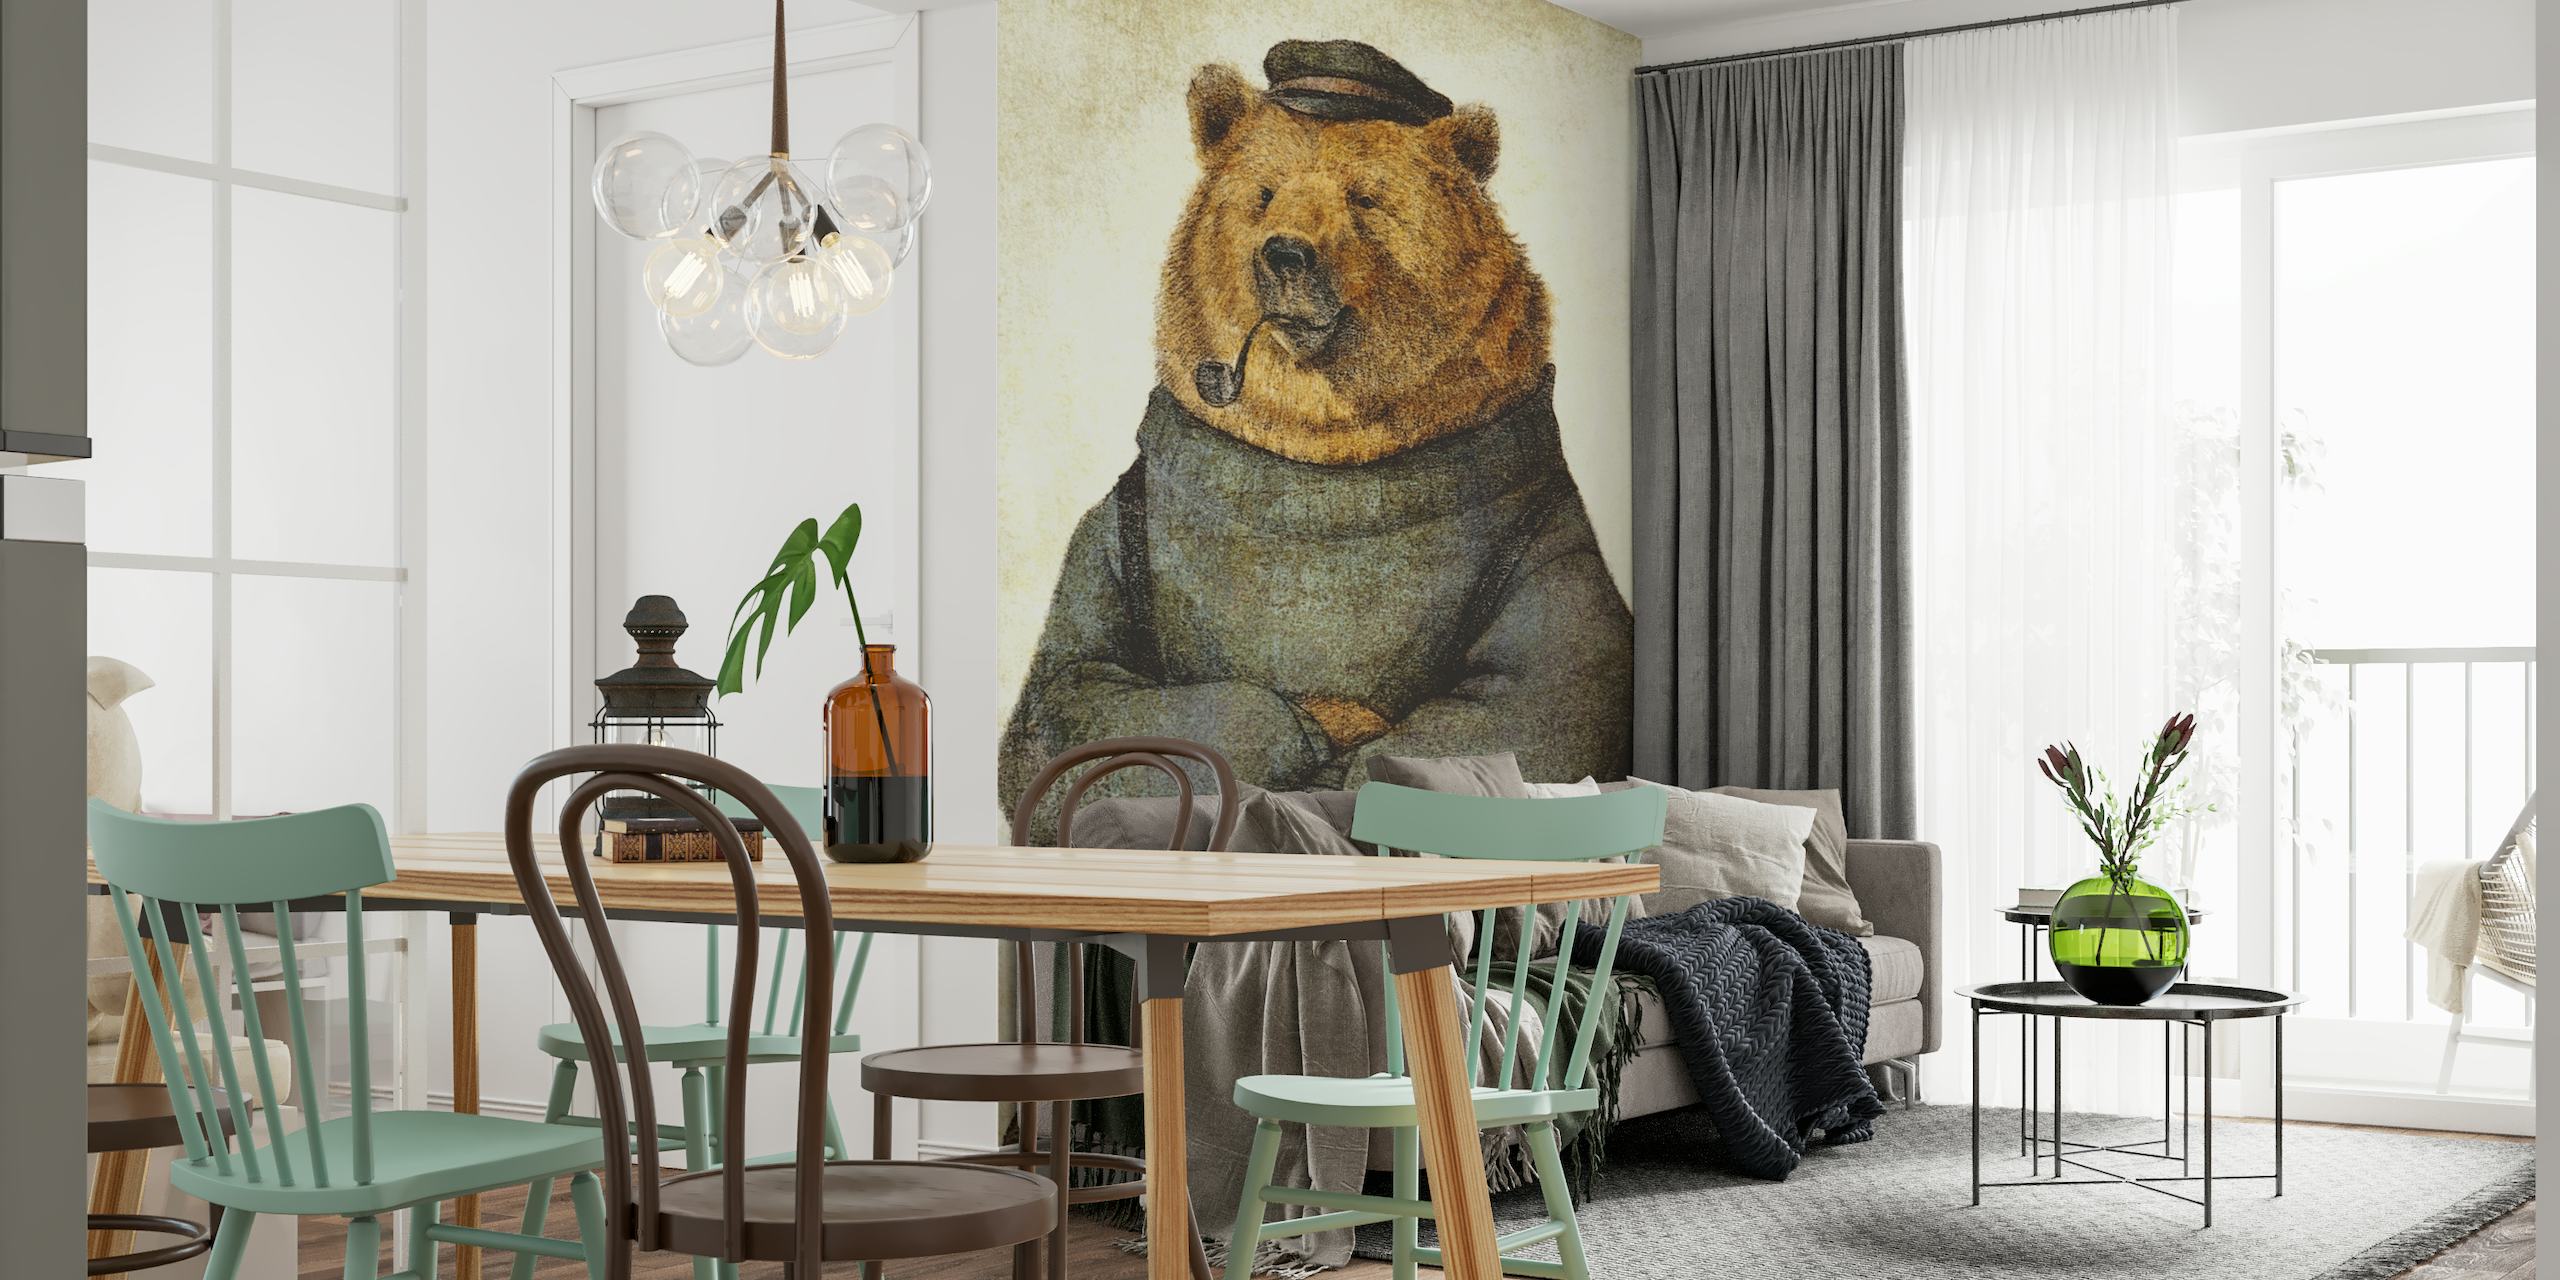 Illustration af en bjørn klædt ud som en tankevækkende sømand med en pibe